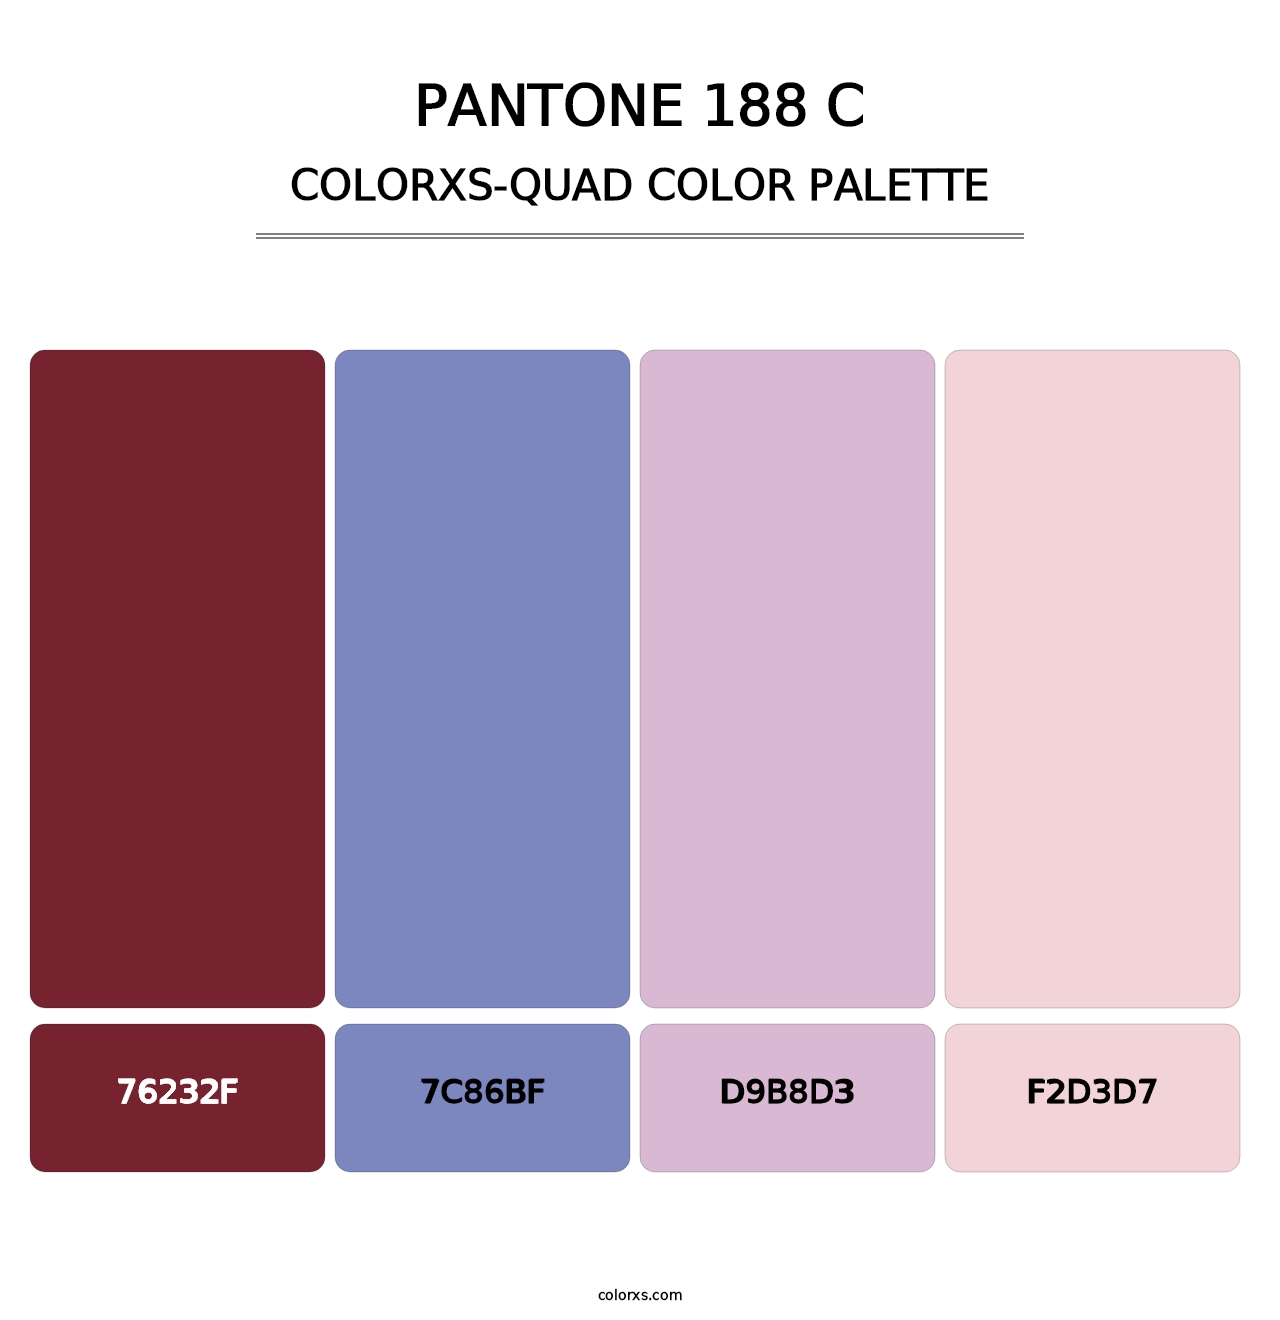 PANTONE 188 C - Colorxs Quad Palette